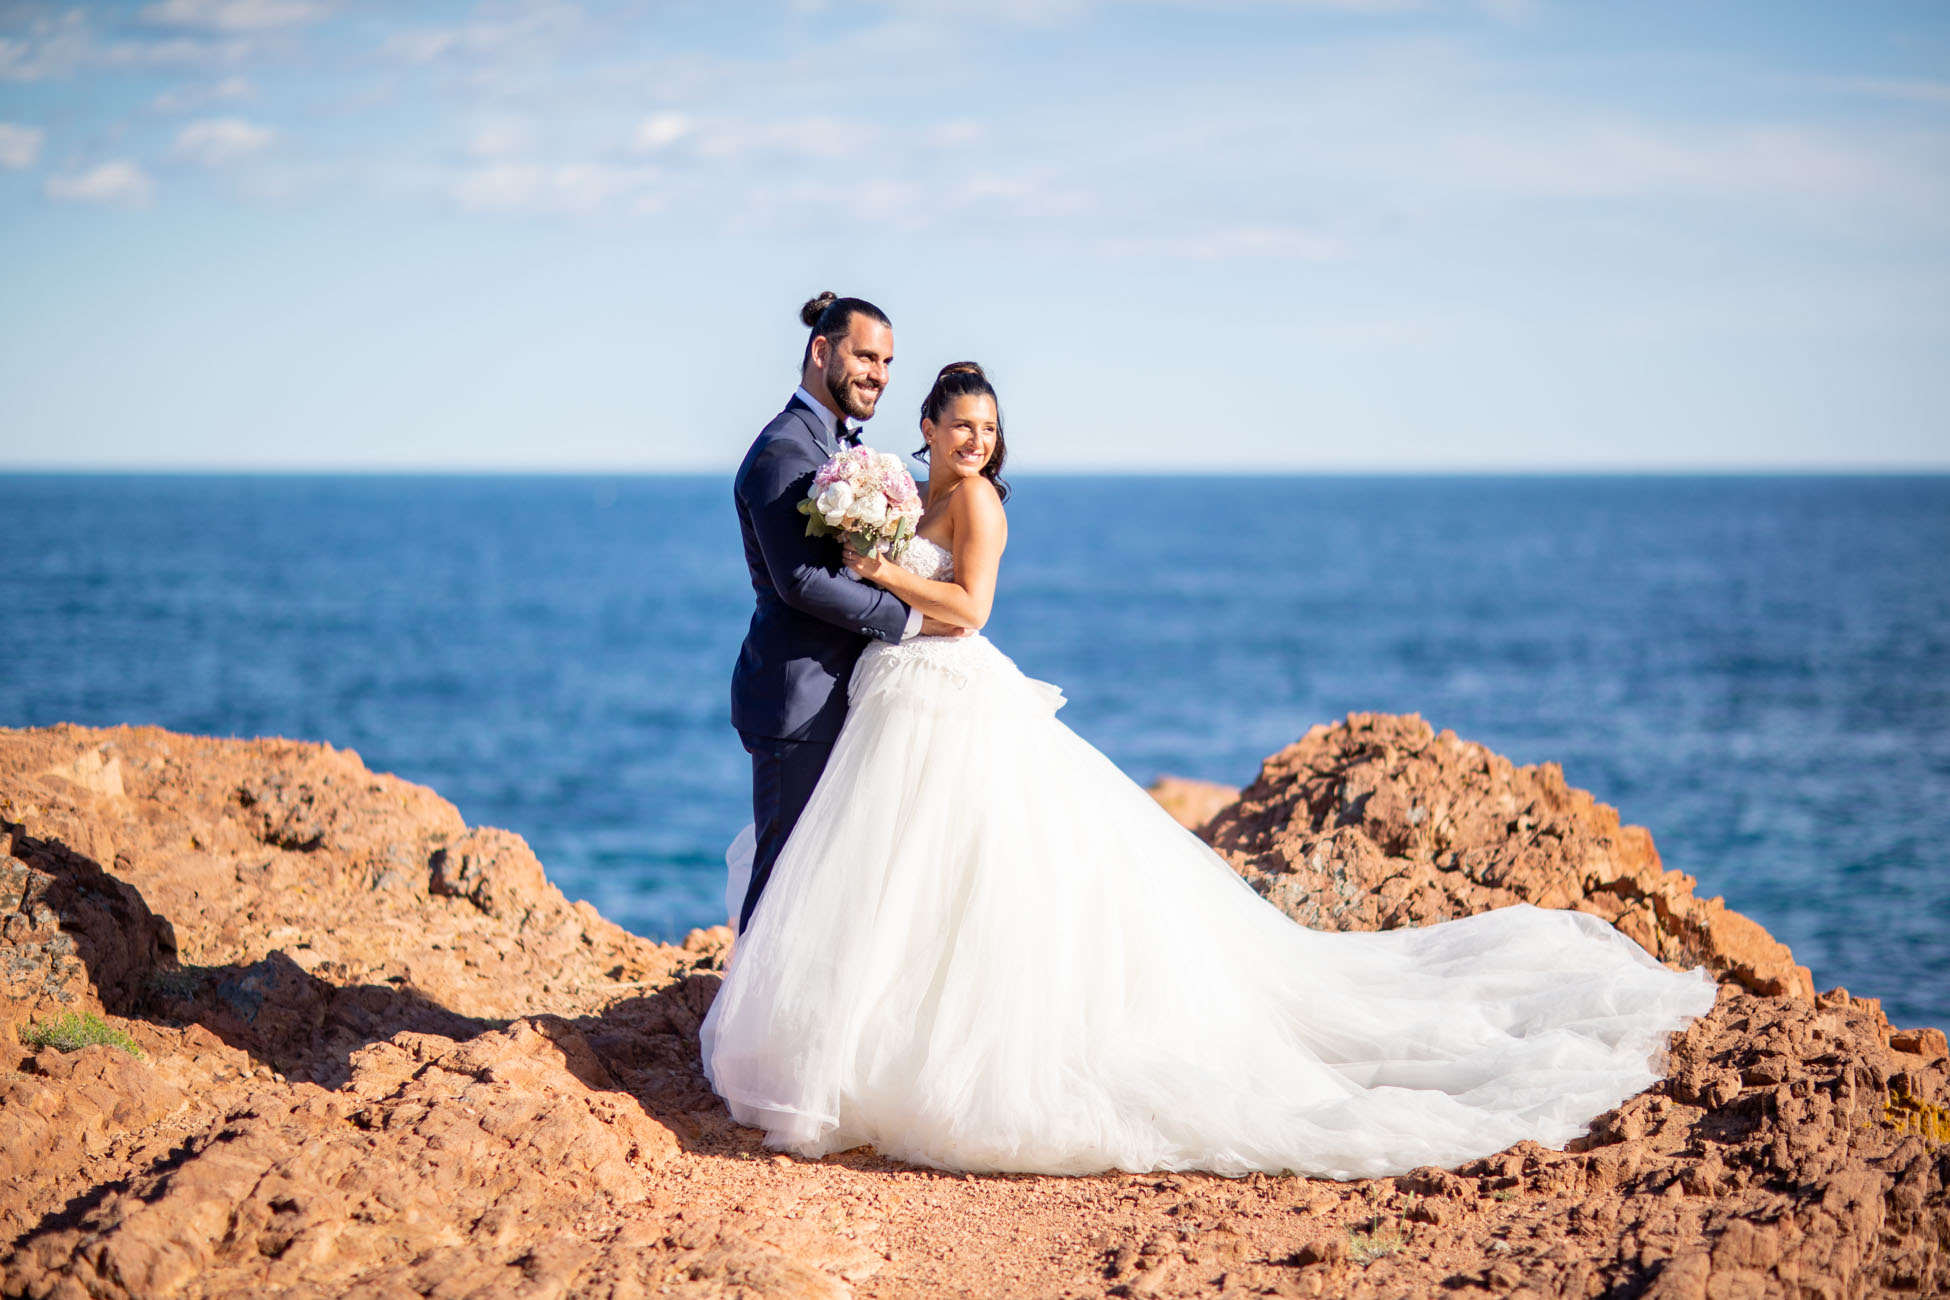 Laura + Samuel - film mariage plage magellan theoule sur romance bord de mer calanque esterel cote azur | PlanetGFX